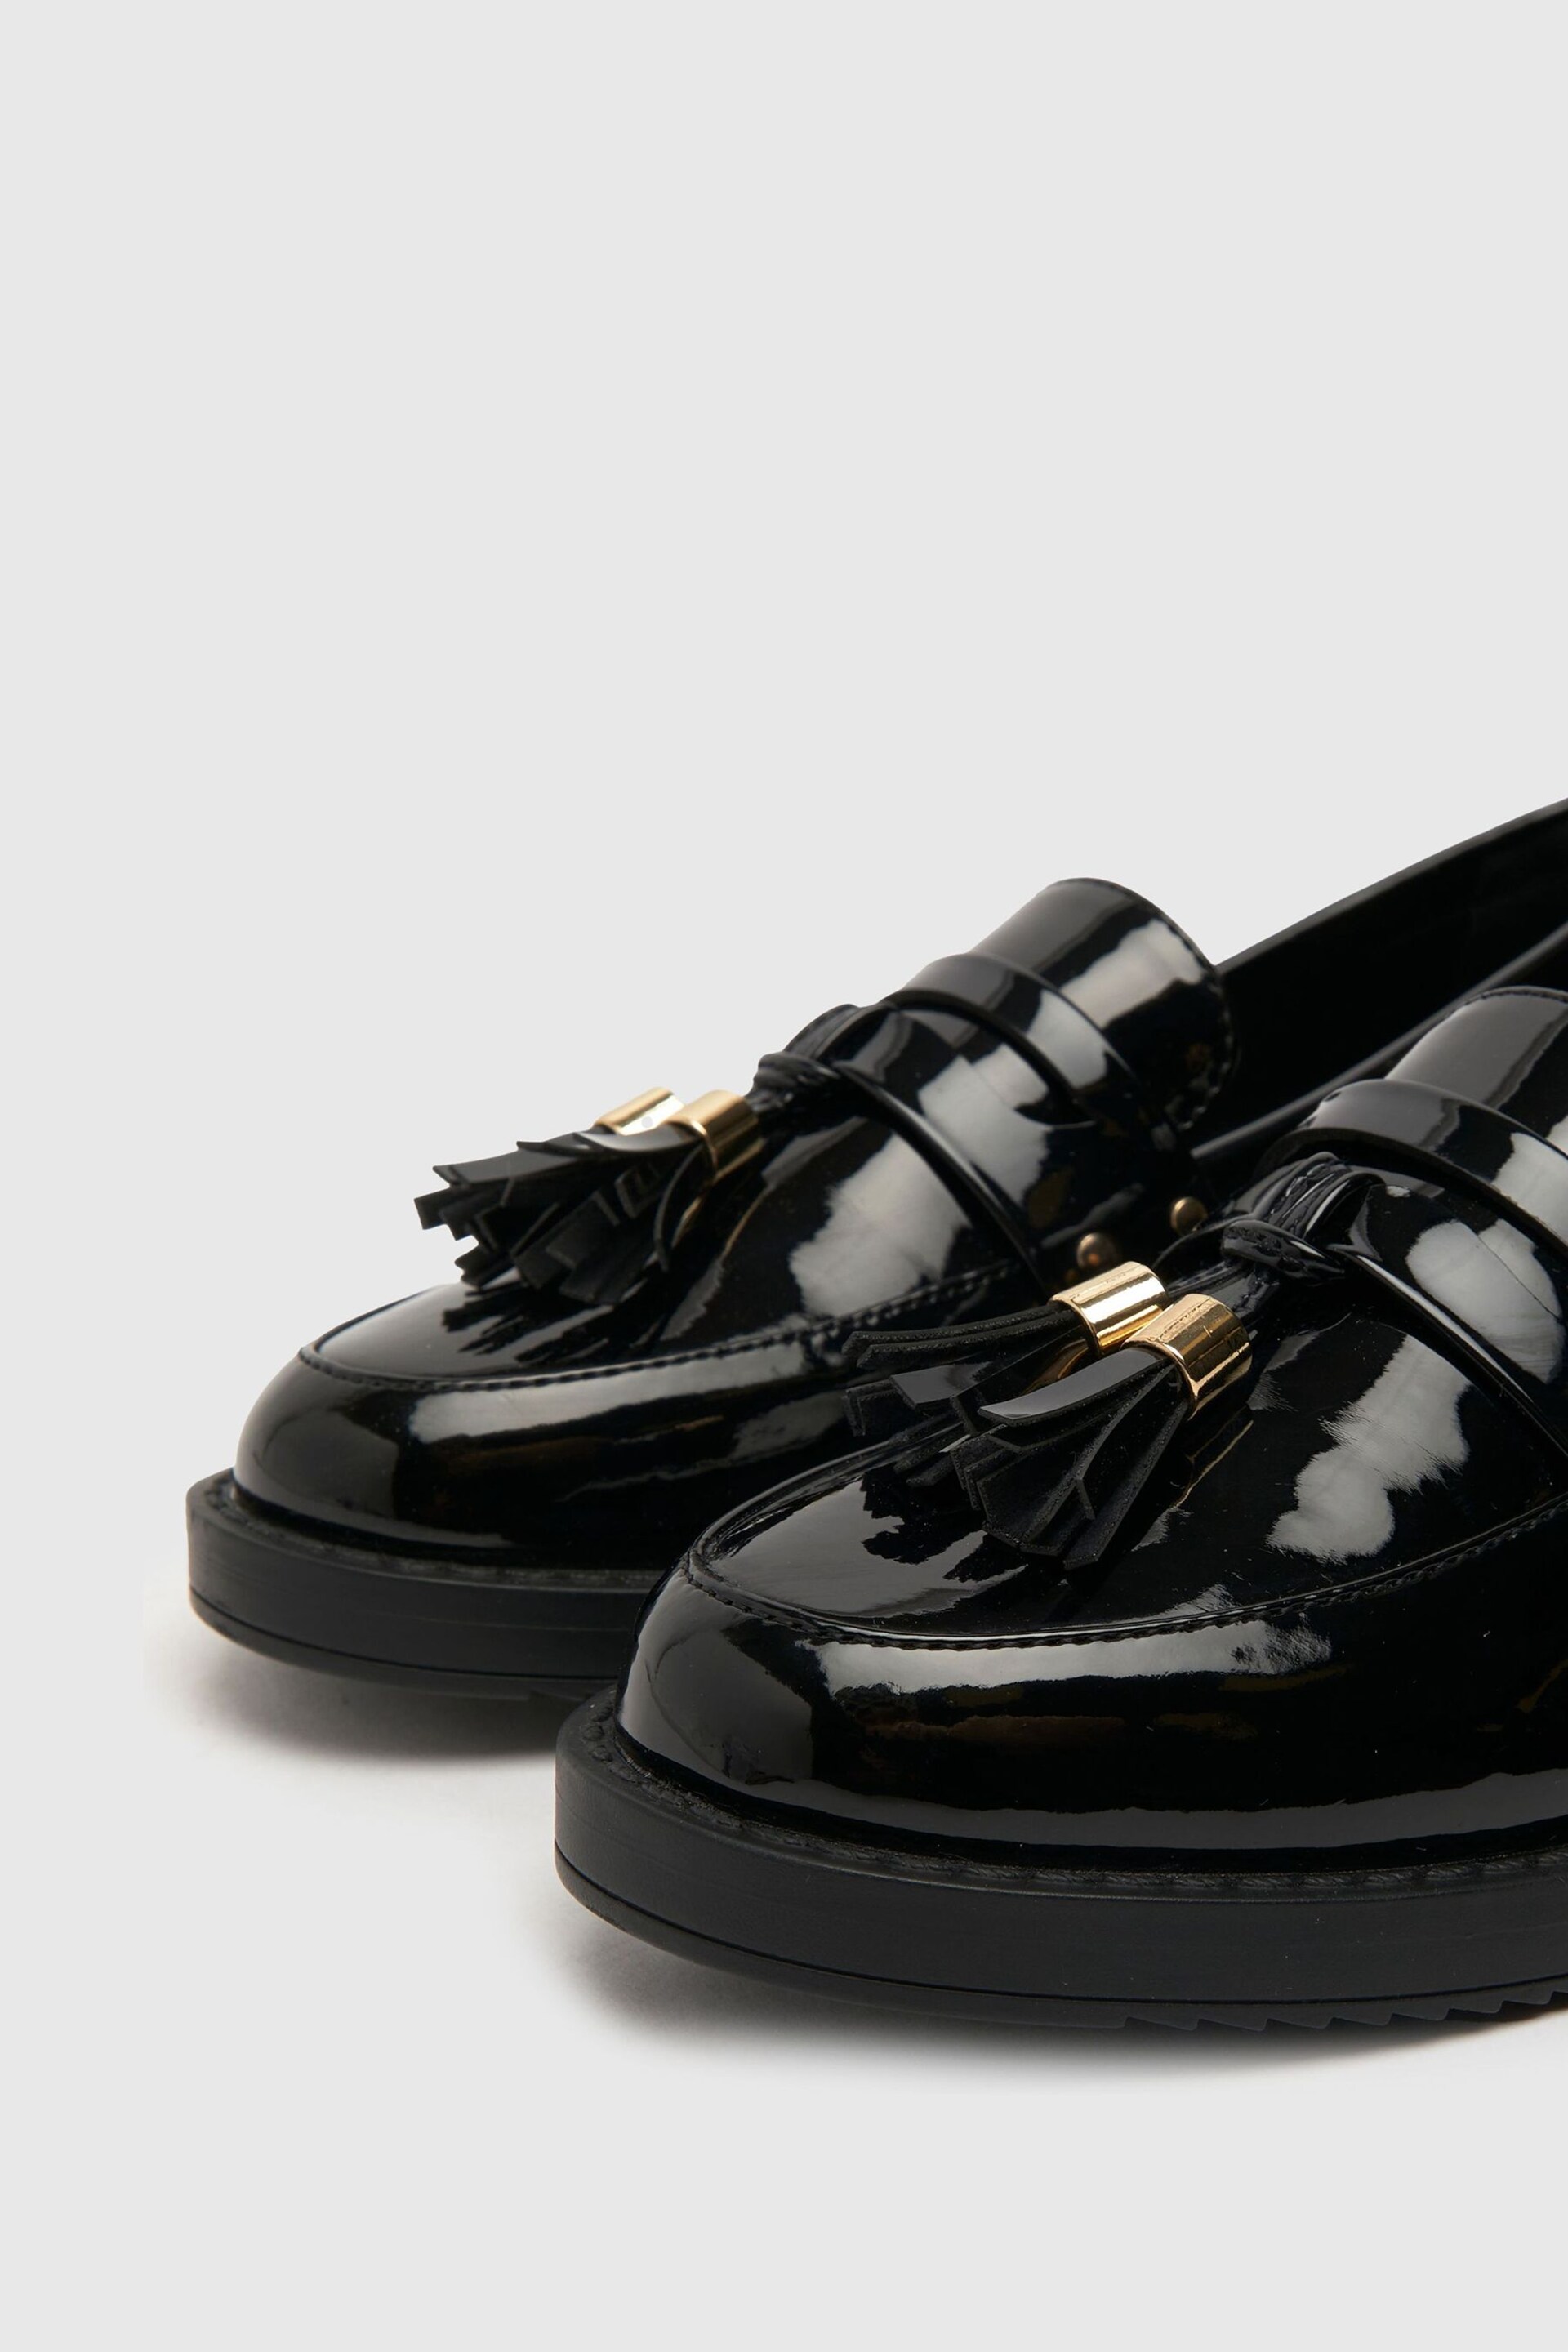 Schuh Lisbon Tassel Loafers - Image 3 of 4